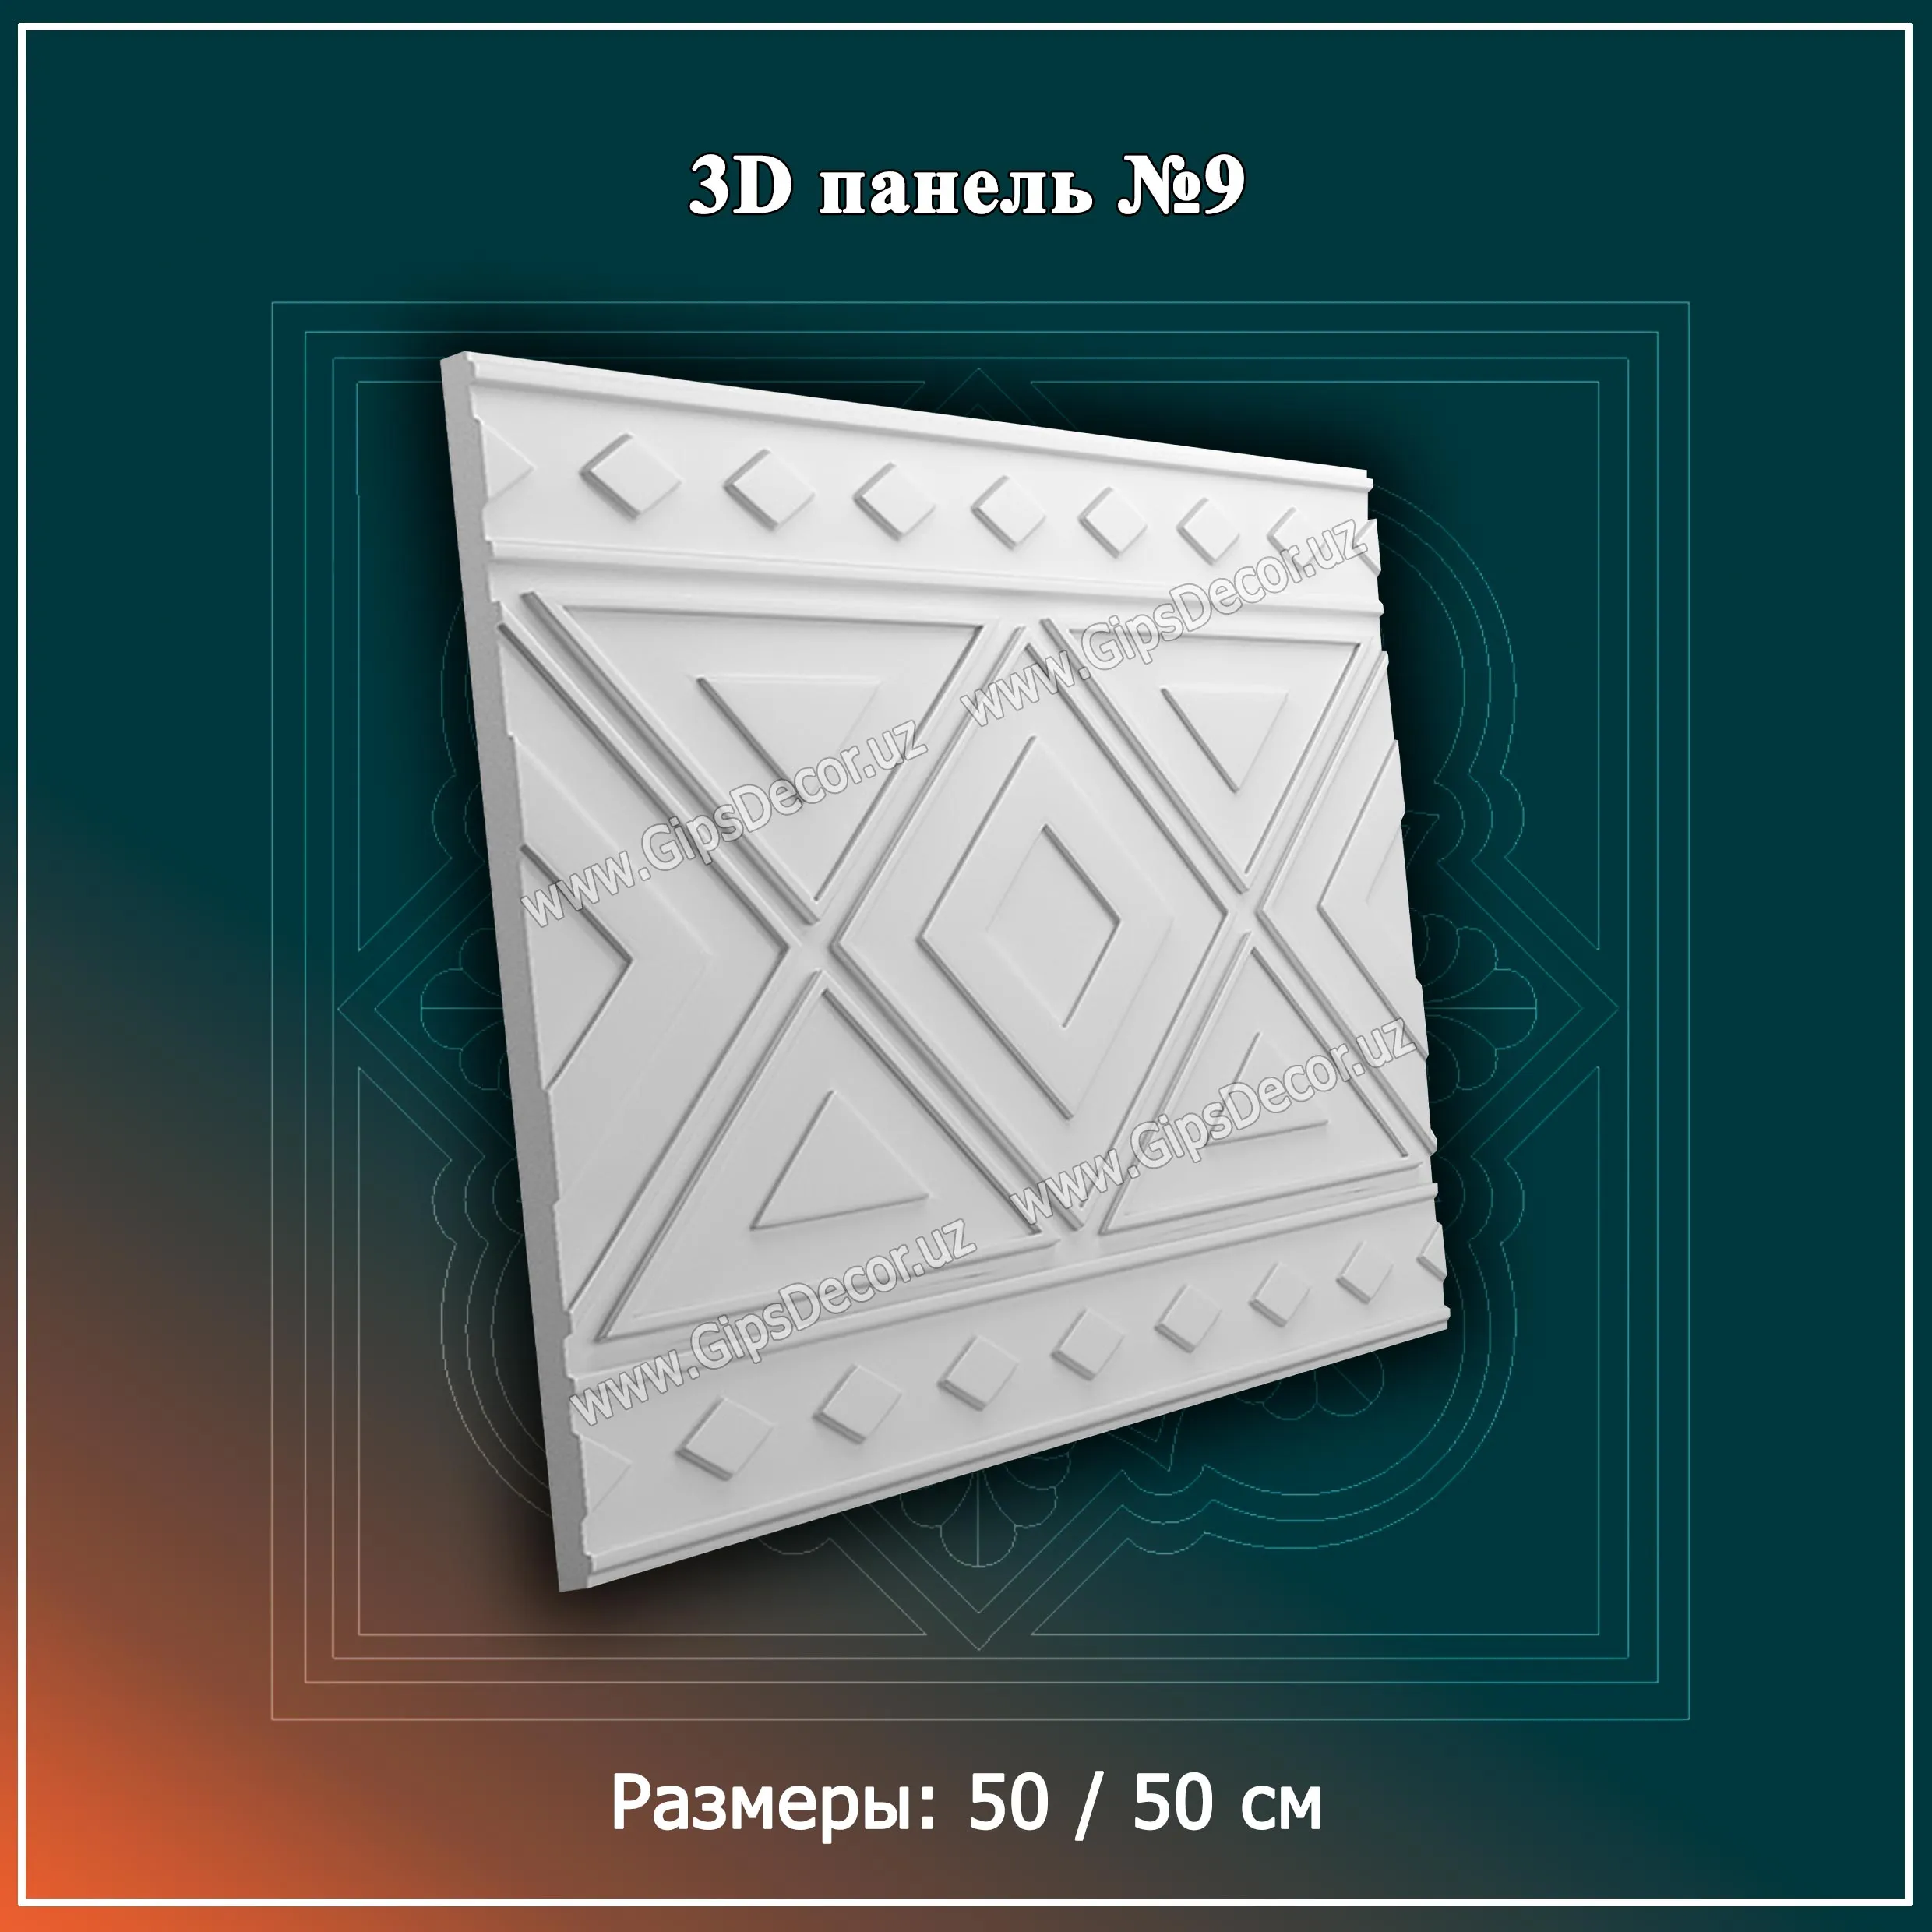 3D Панель №9 Размеры: 50 / 50 см#1